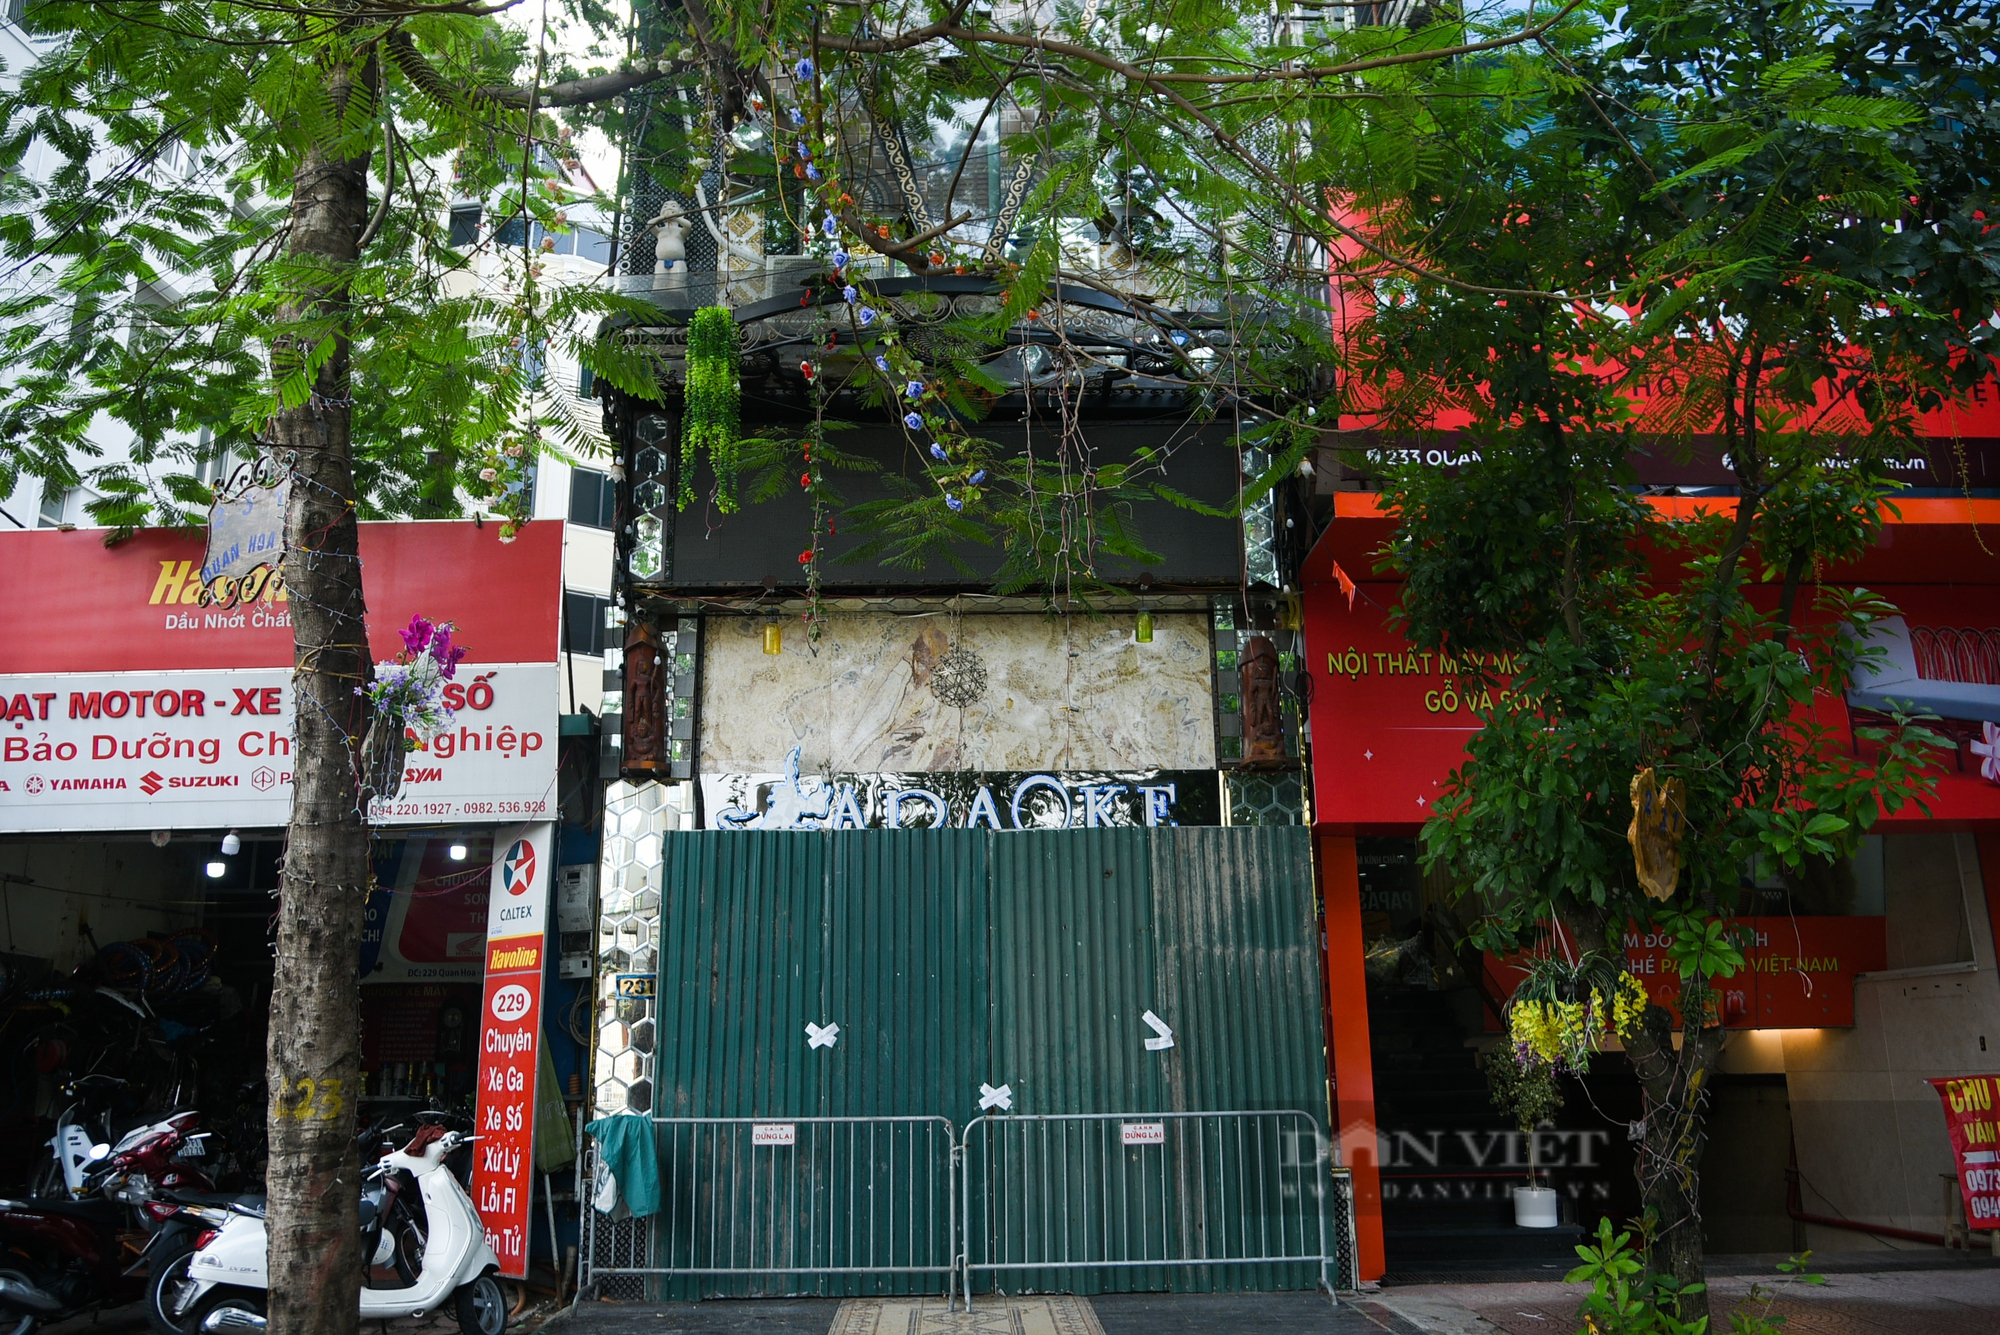 Karaoke vi phạm phòng cháy ở Hà Nội bị rào chắn, dán thông báo để ngăn hoạt động chui - Ảnh 11.